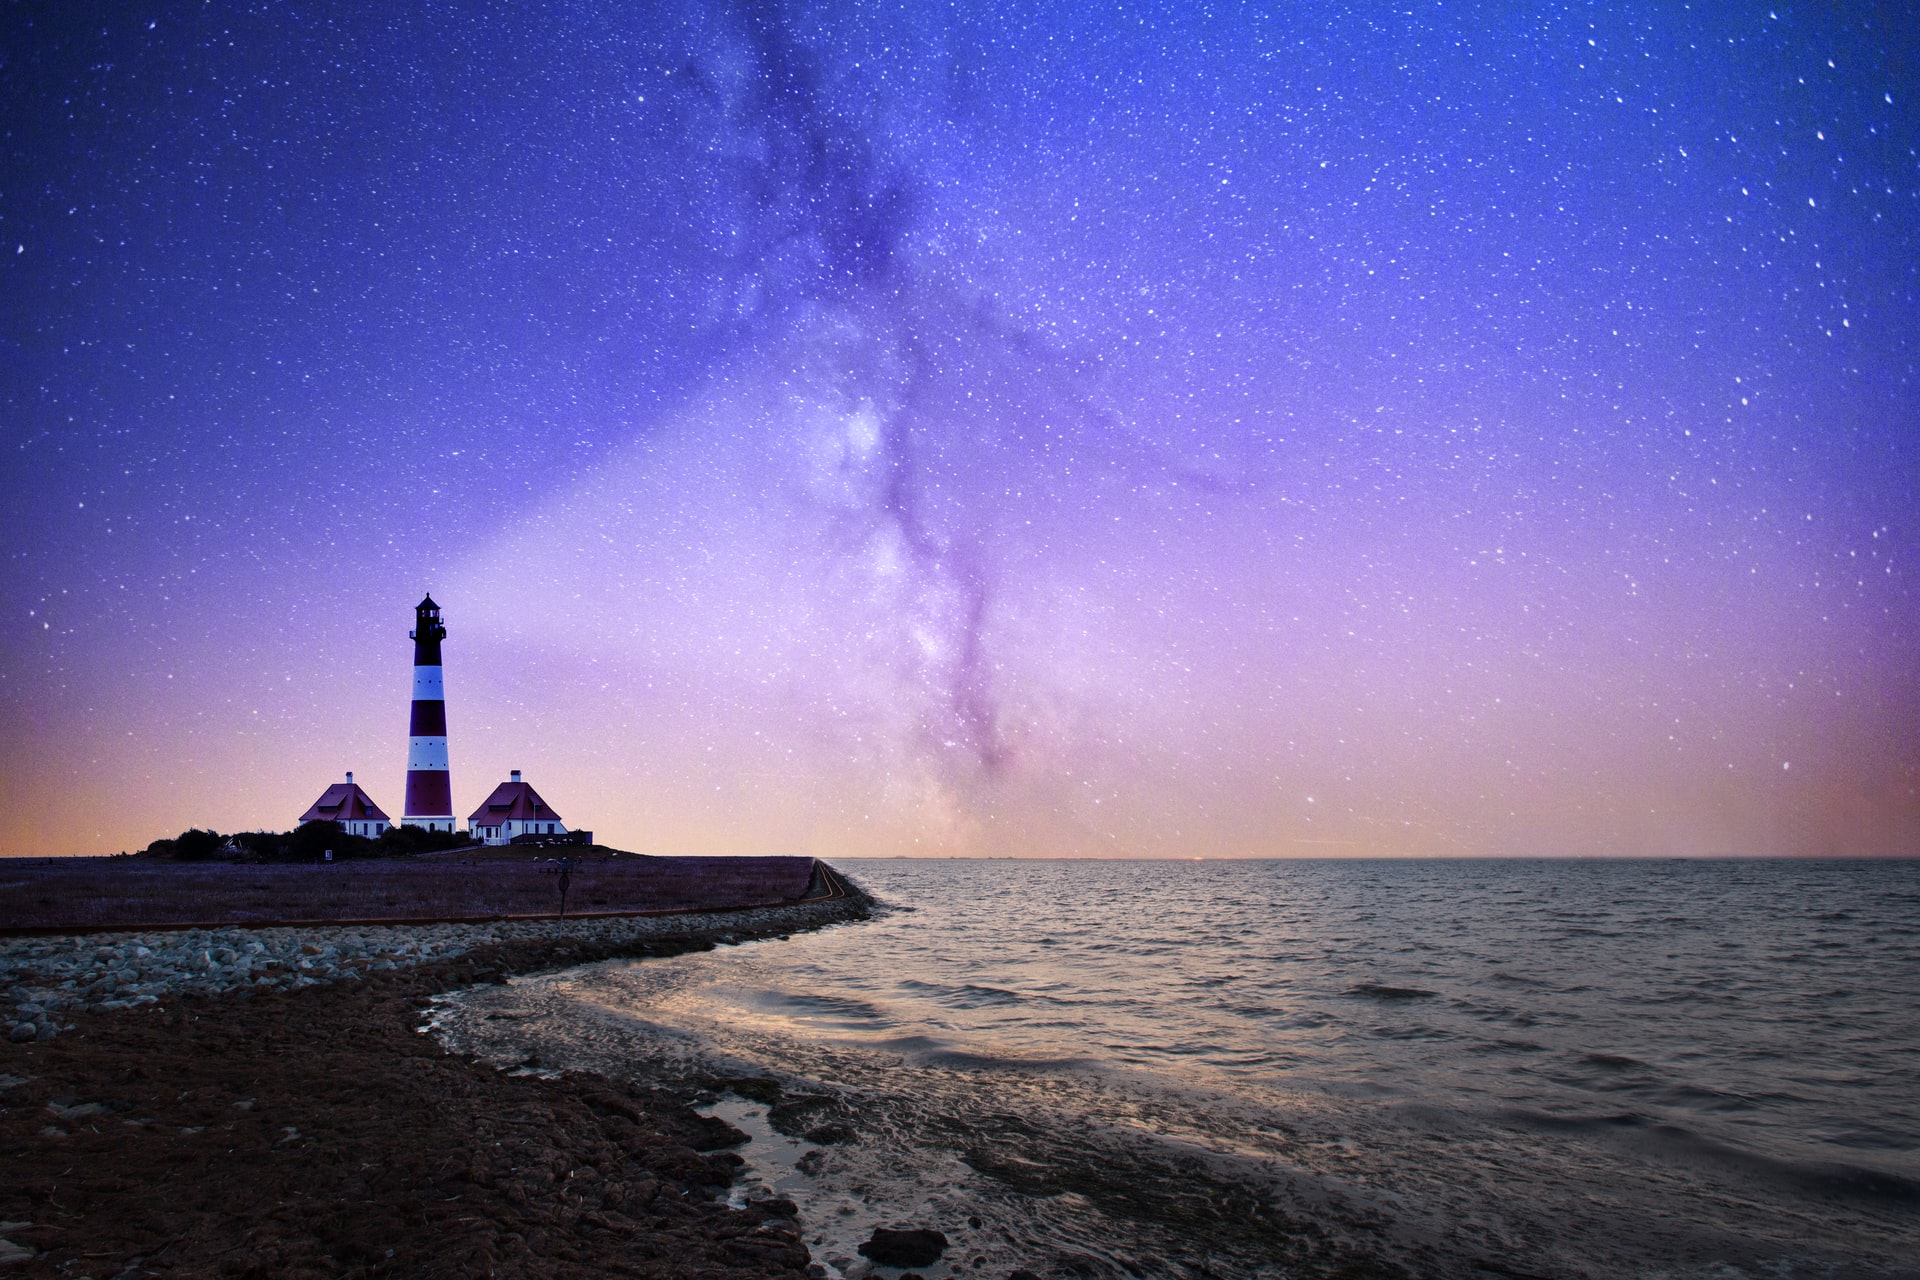 Lighthouse photo by Robert Wiedemann